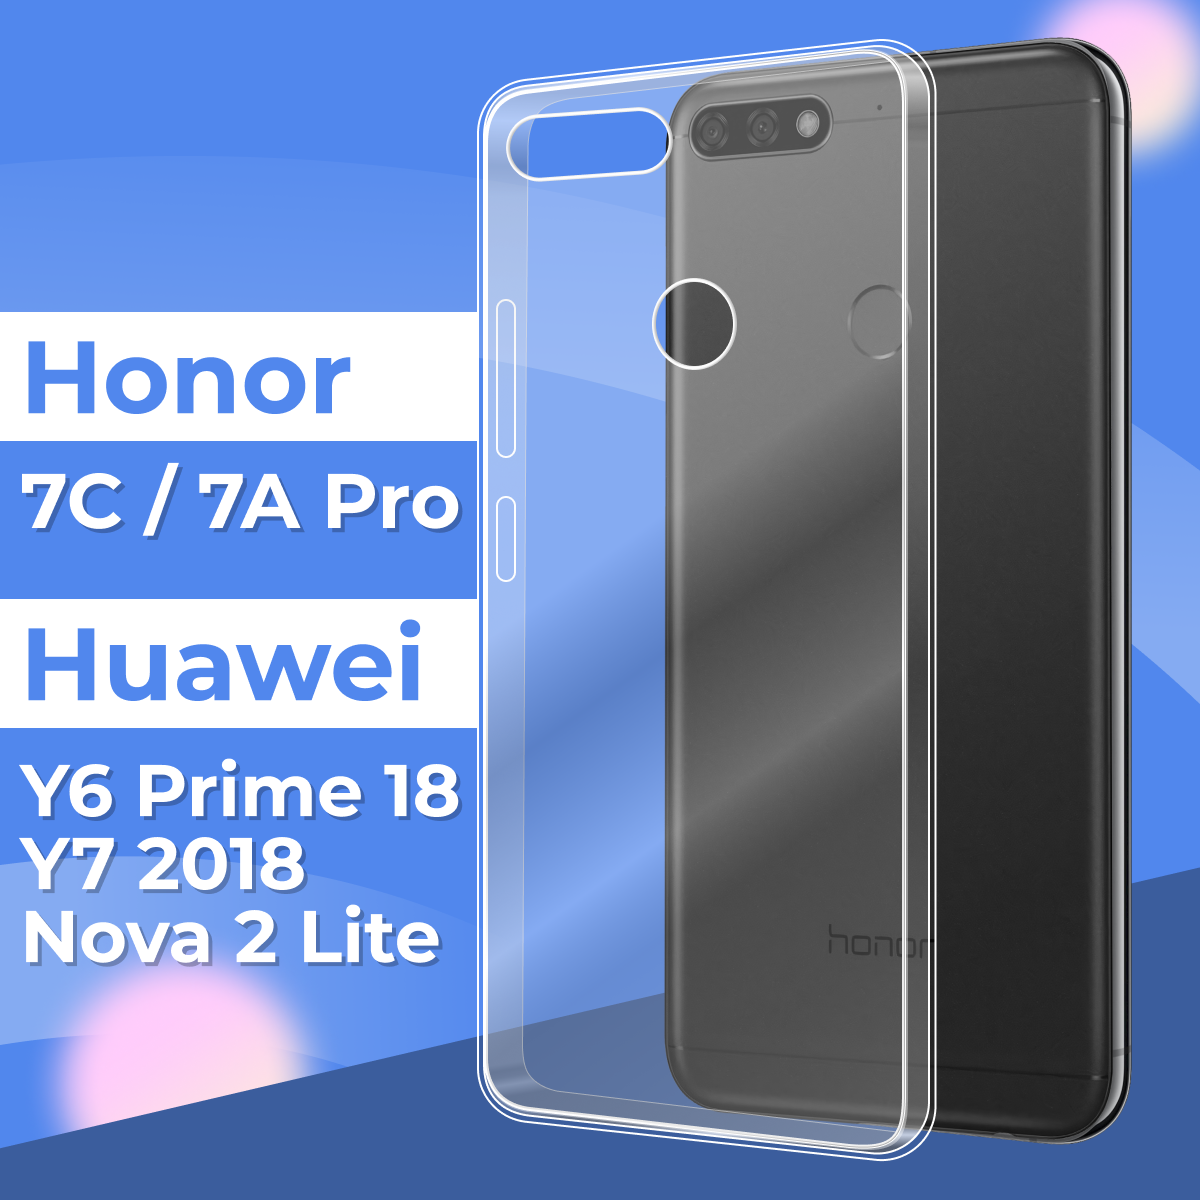 Ультратонкий силиконовый чехол для телефона Honor 7A Pro, Honor 7C, Huawei Y6 2018, Huawei Y6 Prime 2018 и Huawei Nova 2 Lite / Premium силикон